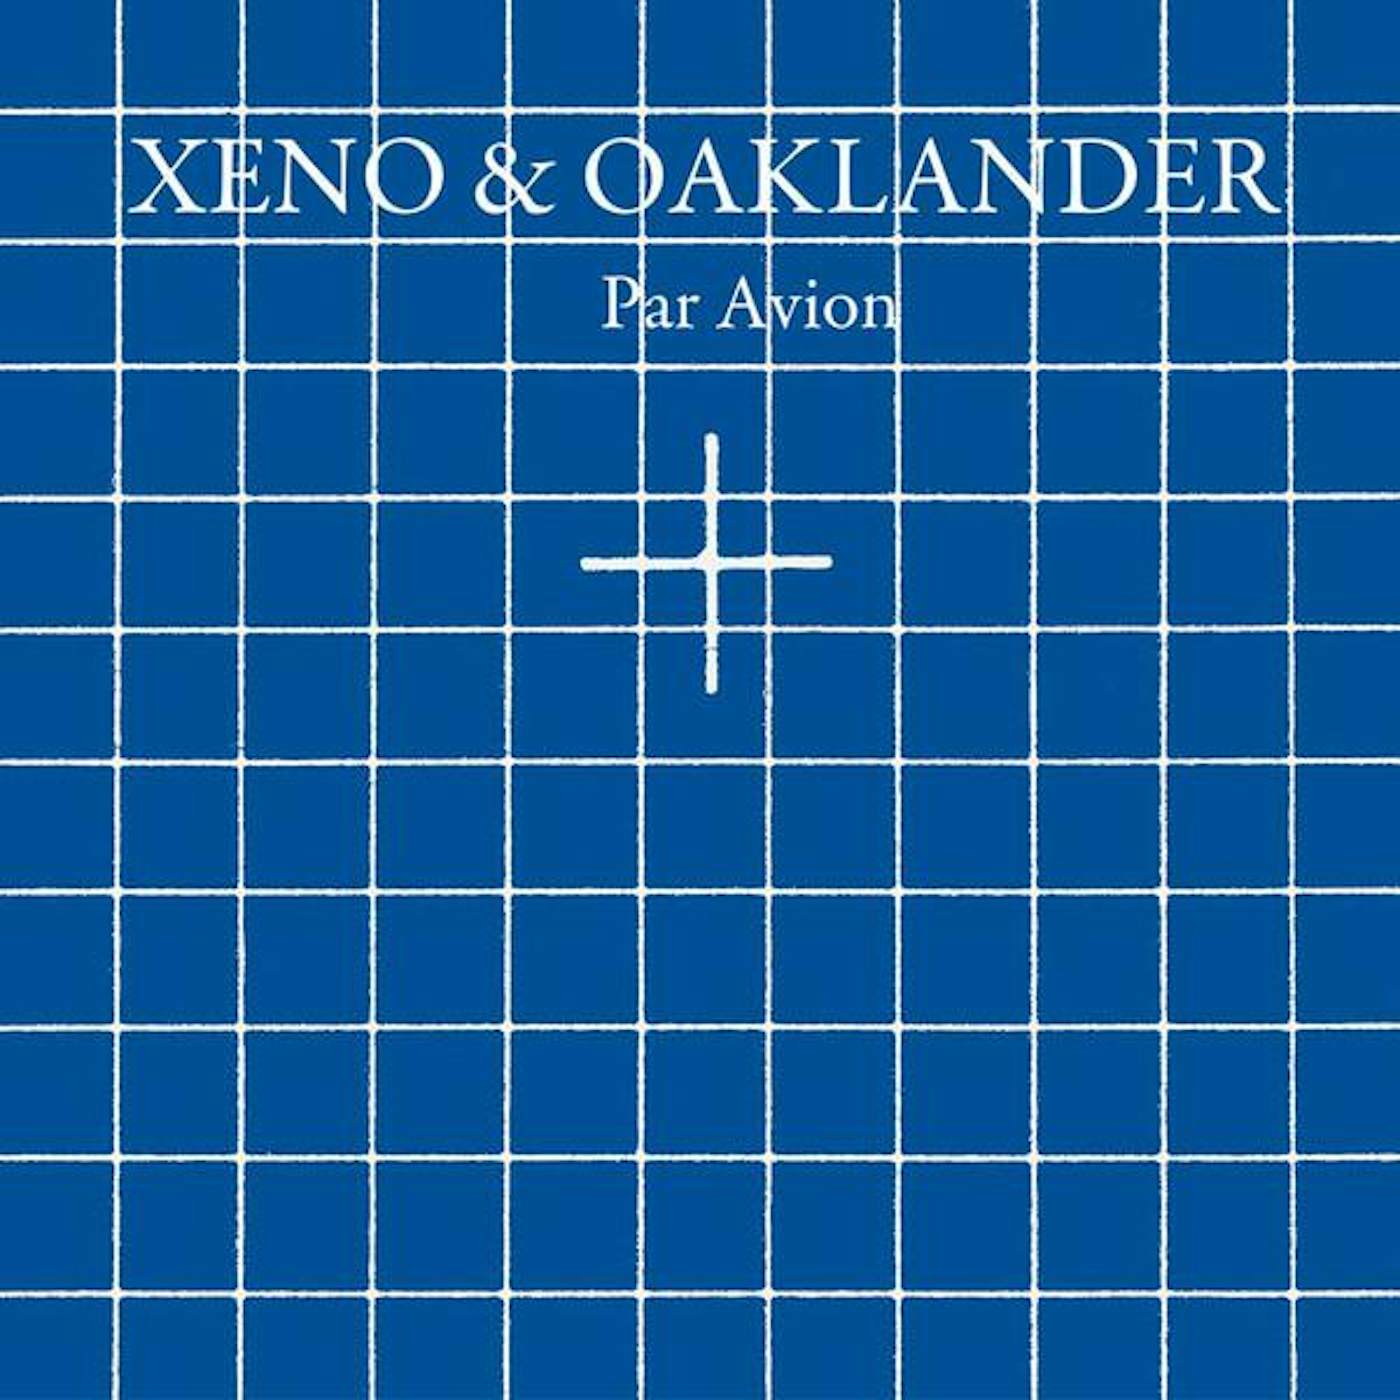 Xeno & Oaklander PAR AVION Vinyl Record